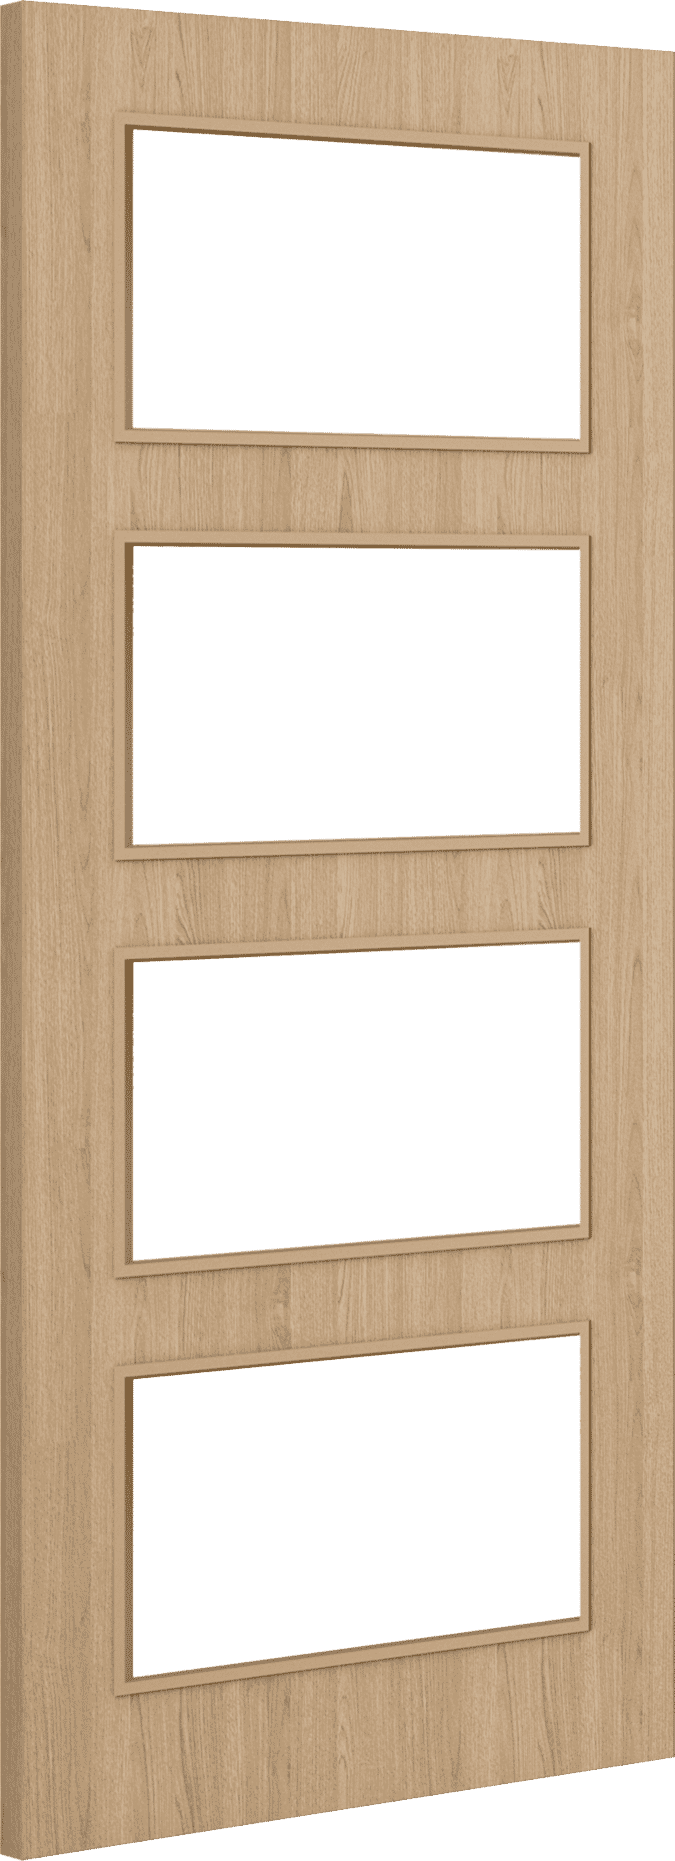 2032mm x 813mm x 44mm (32") Architectural Oak 04 Clear Glazed - Prefinished FD30 Fire Door Blank